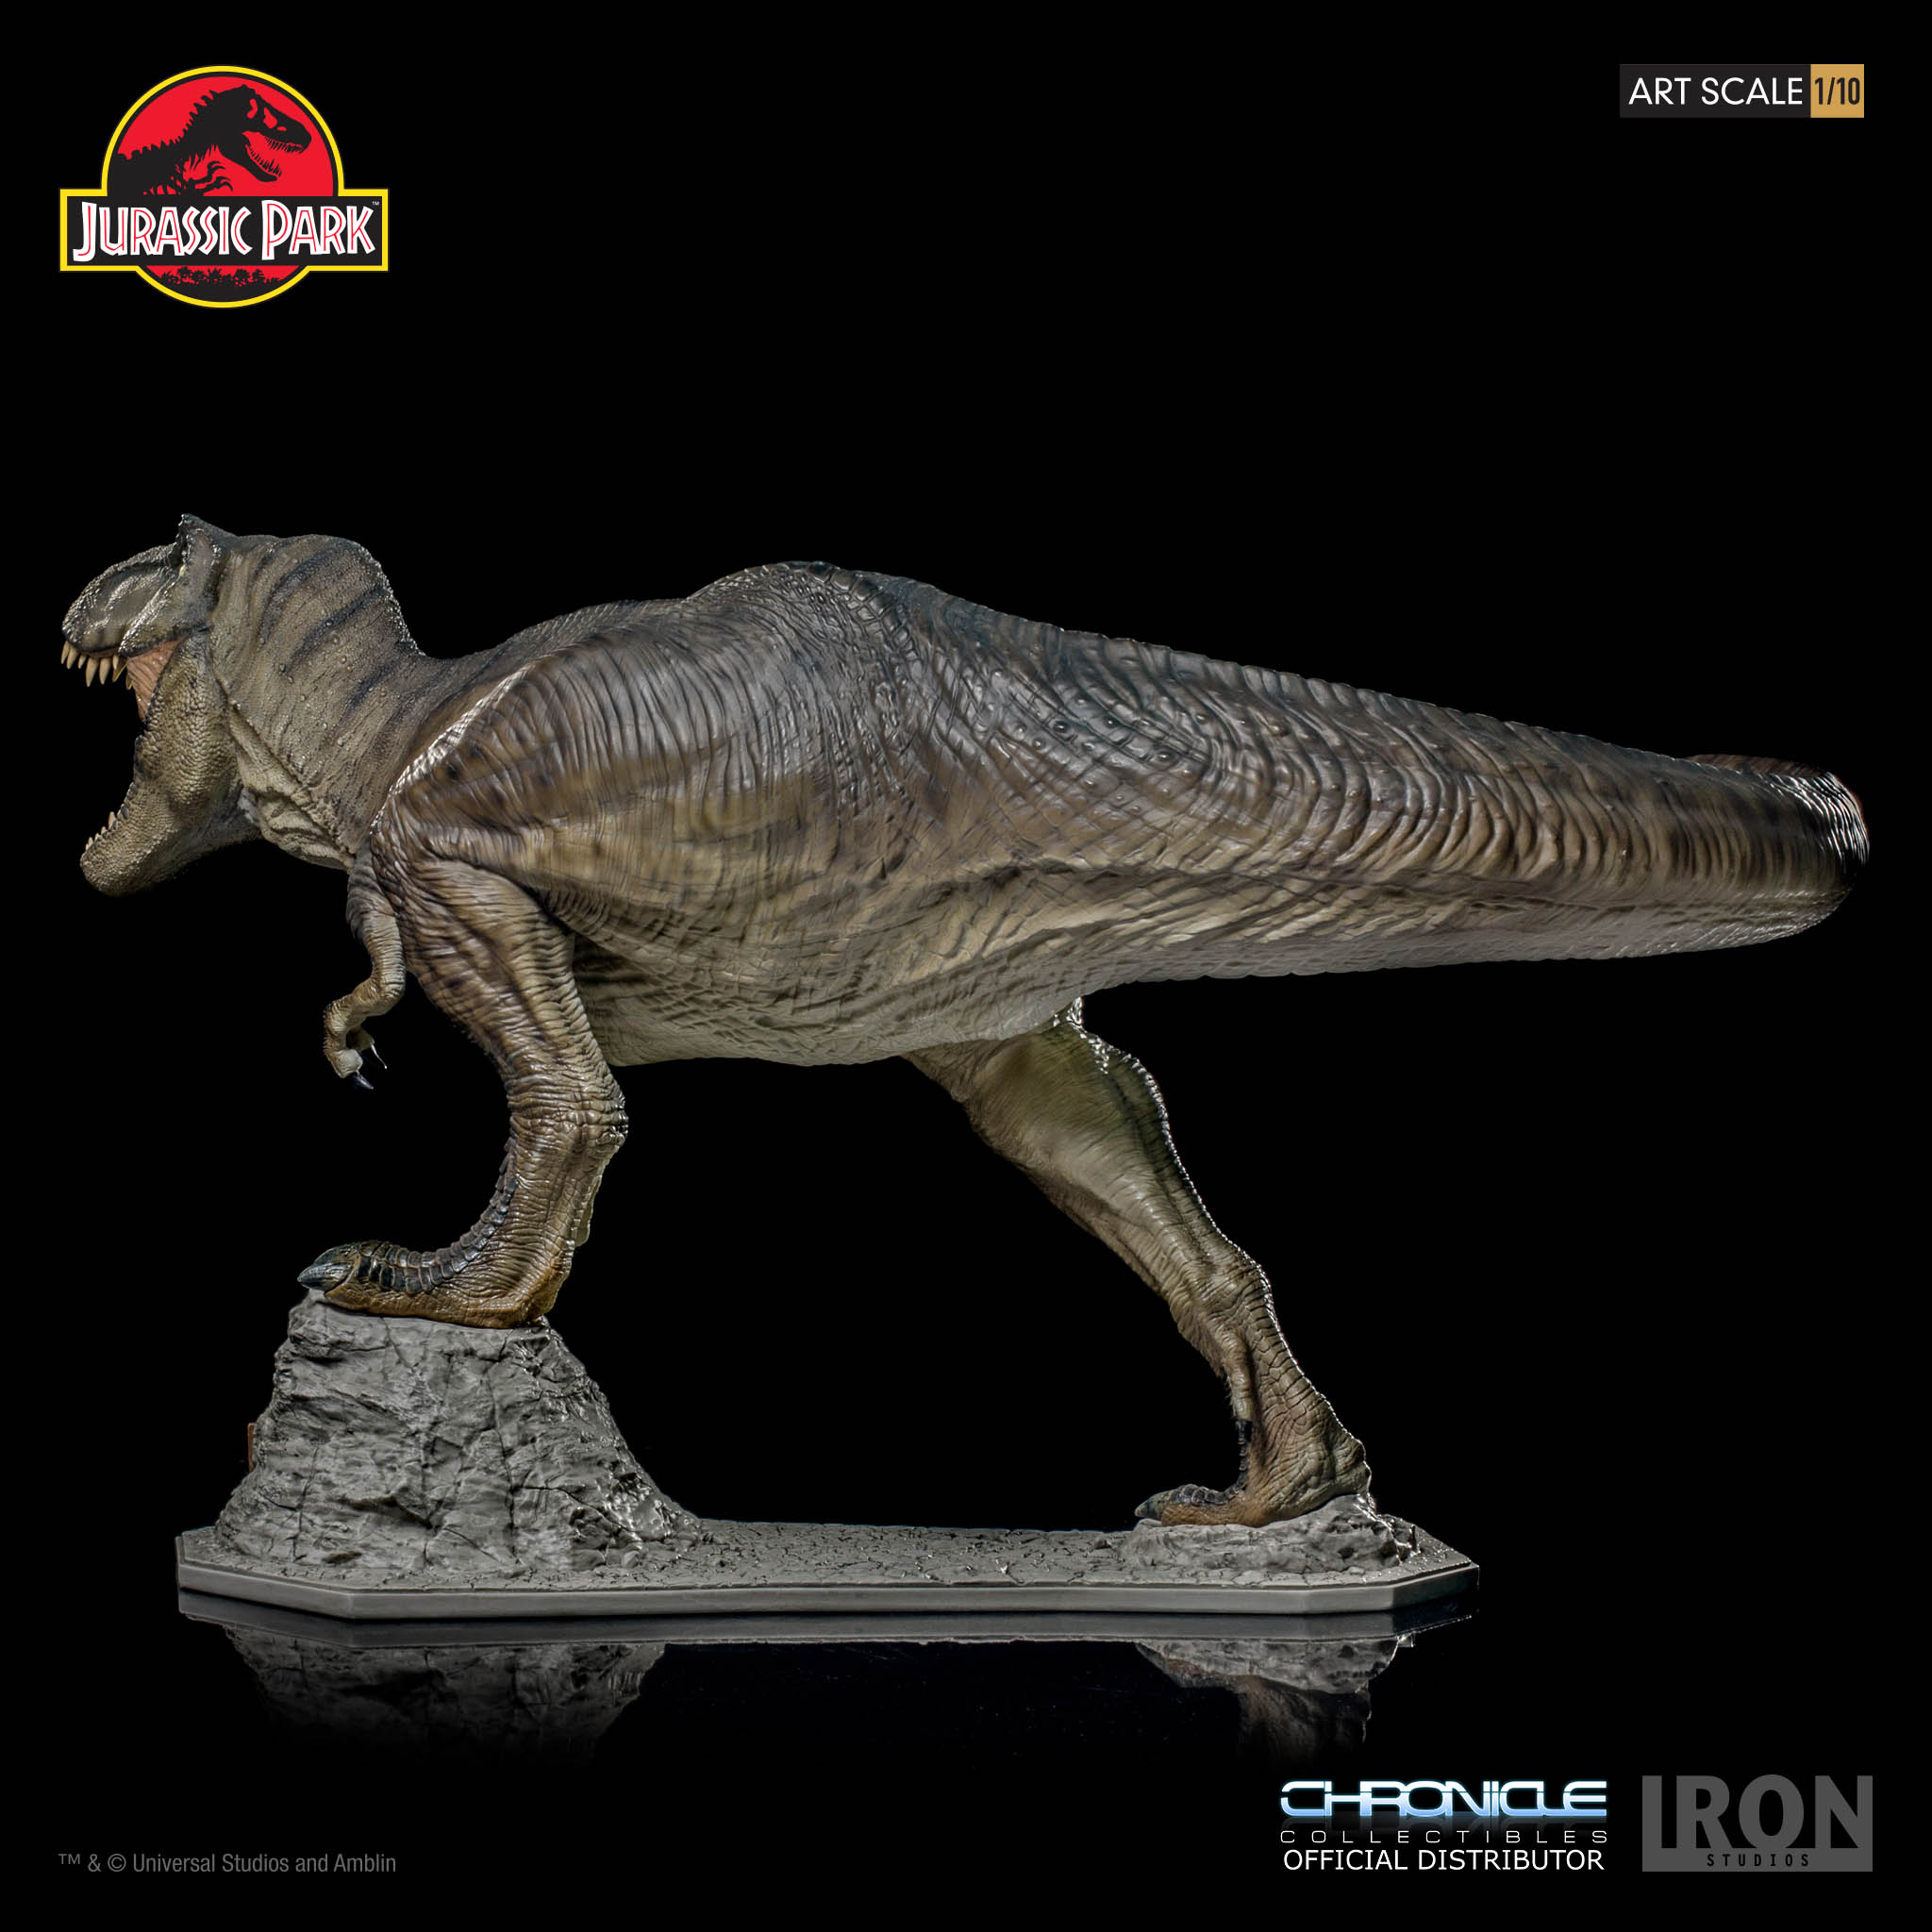 Jurassic Park & Jurassic World - Iron Studio U8idfQtA_o